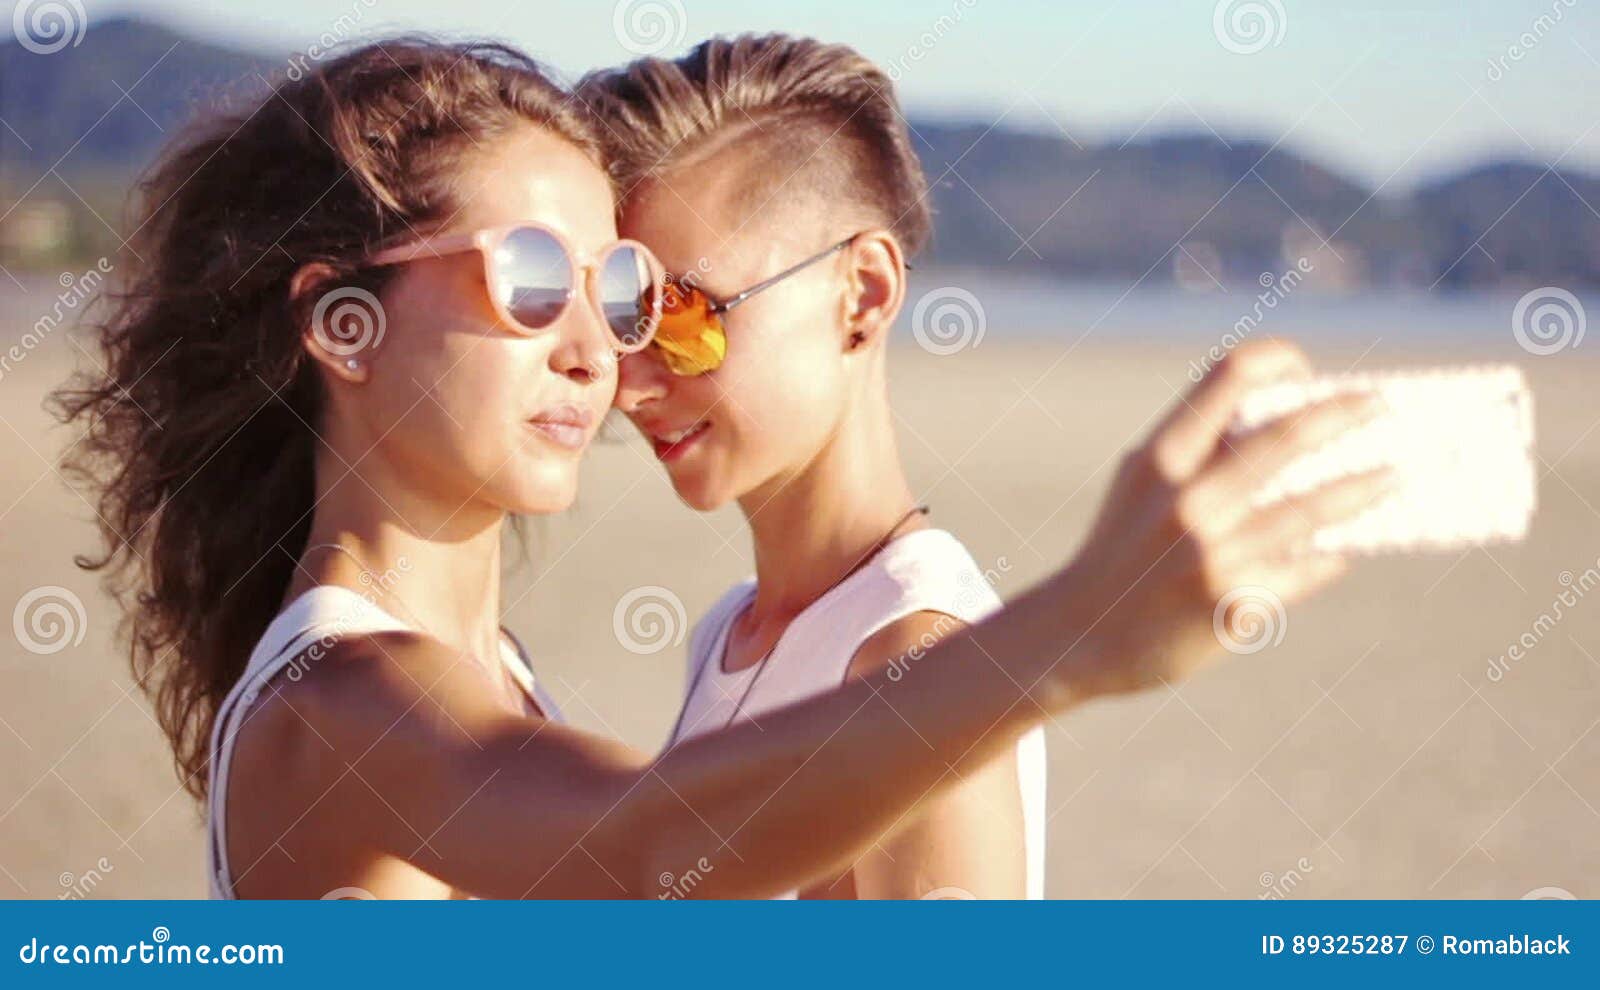 hot young lesbian couple teen